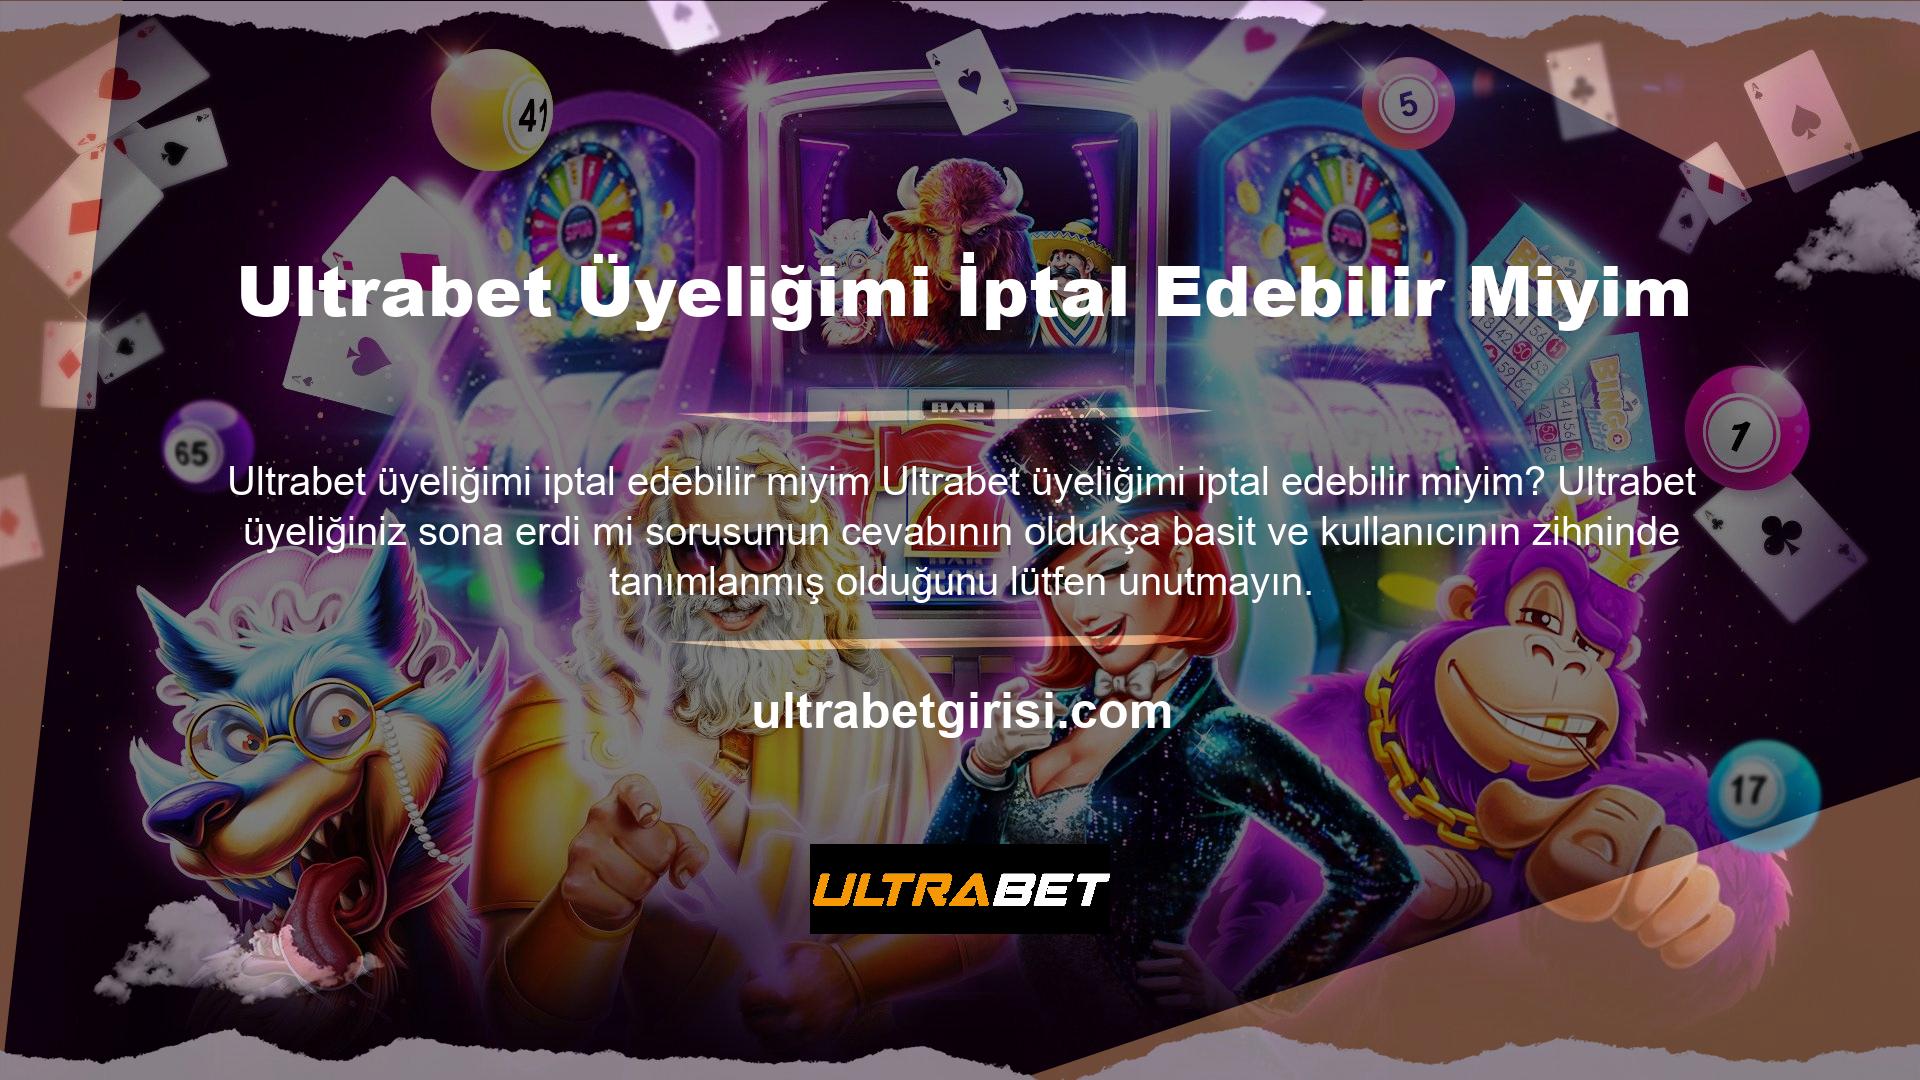 Ultrabet kullanıcı dostu bir site olduğundan hesabınız yasaklanabilir ve erişiminiz engellenebilir